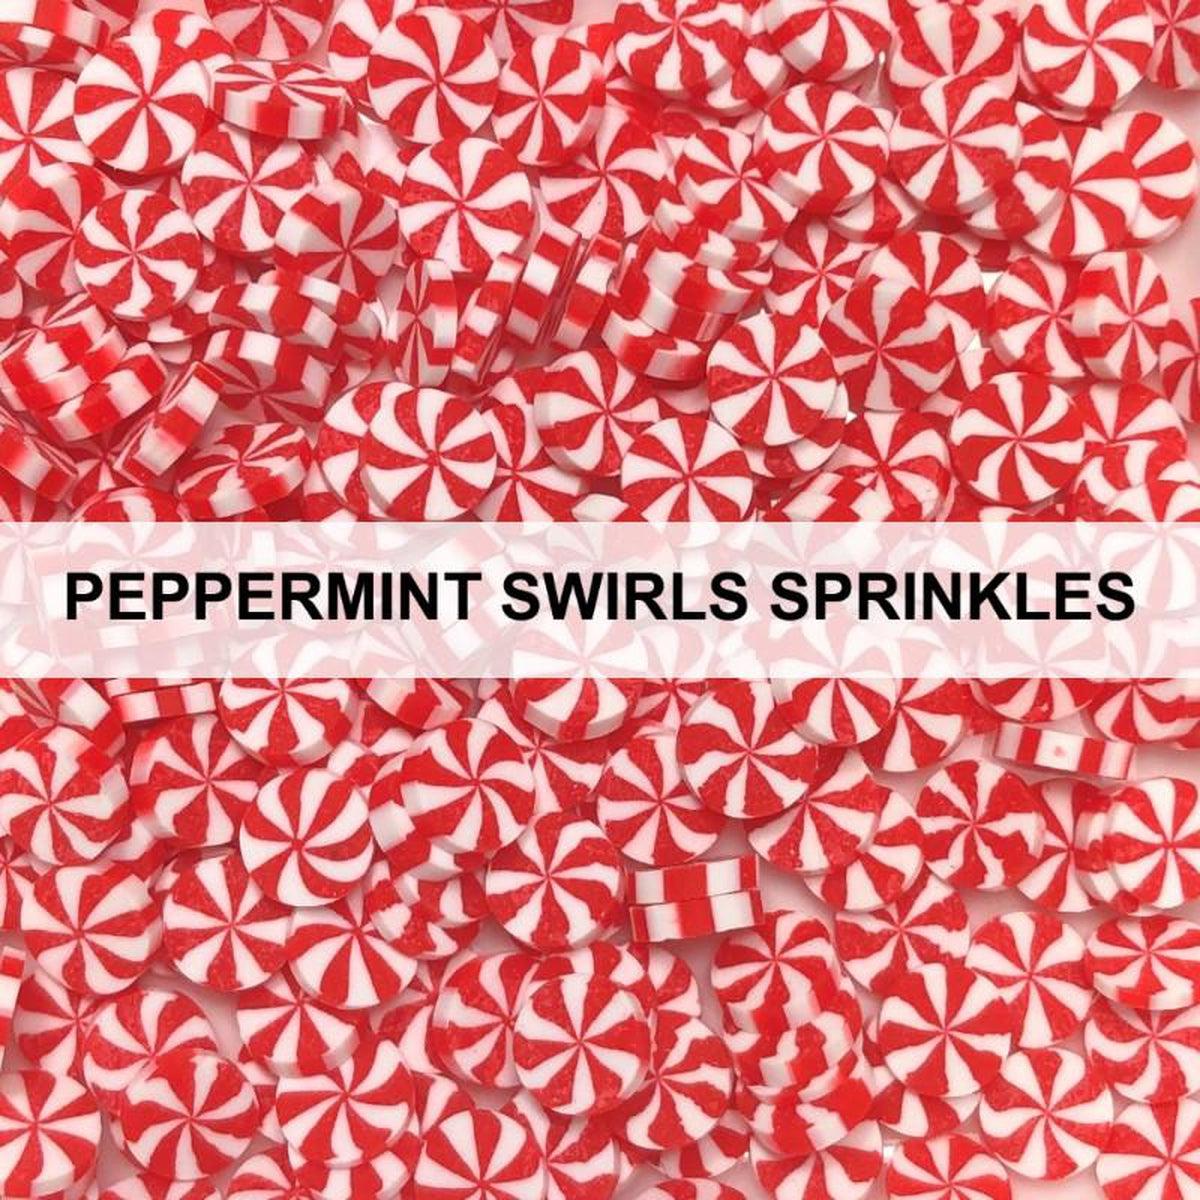 Peppermint Swirl Sprinkles for Christmas